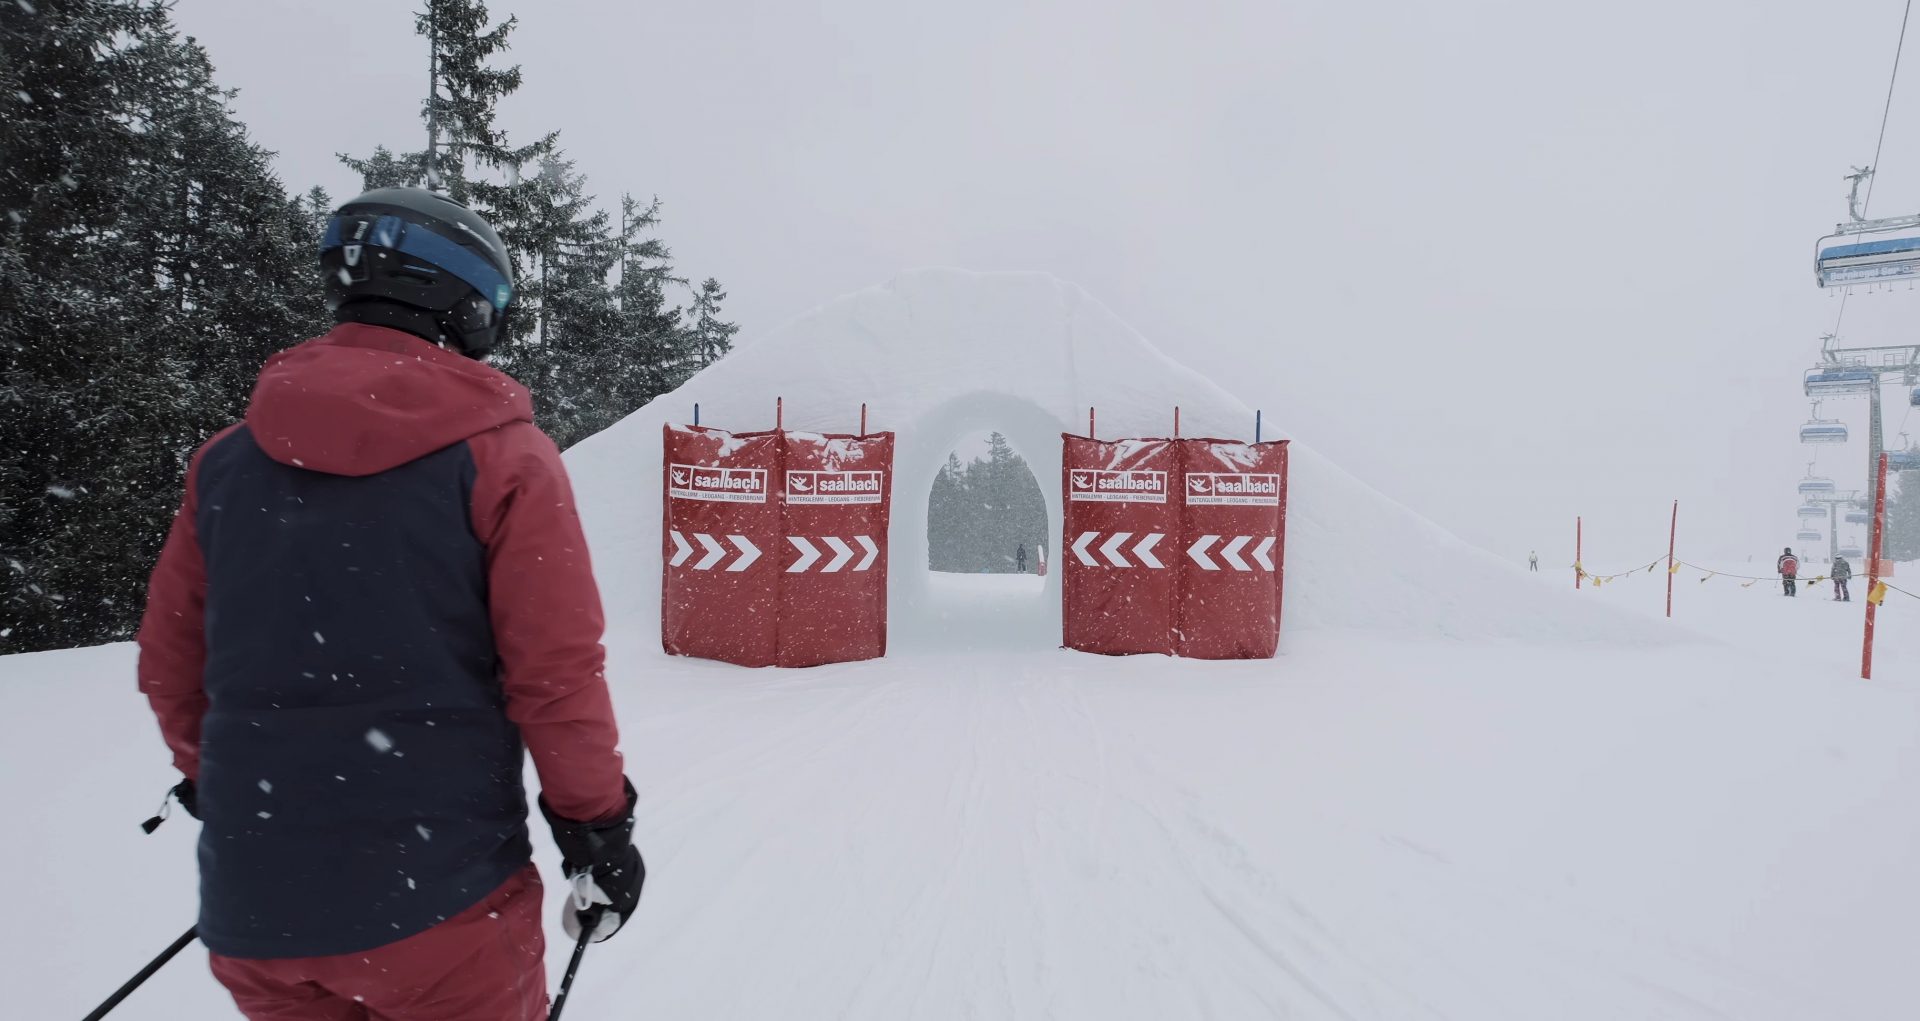 Snow Trail en Learn-to-Ride Park in Saalbach - Een van de skitunnels op de Snow Trails!